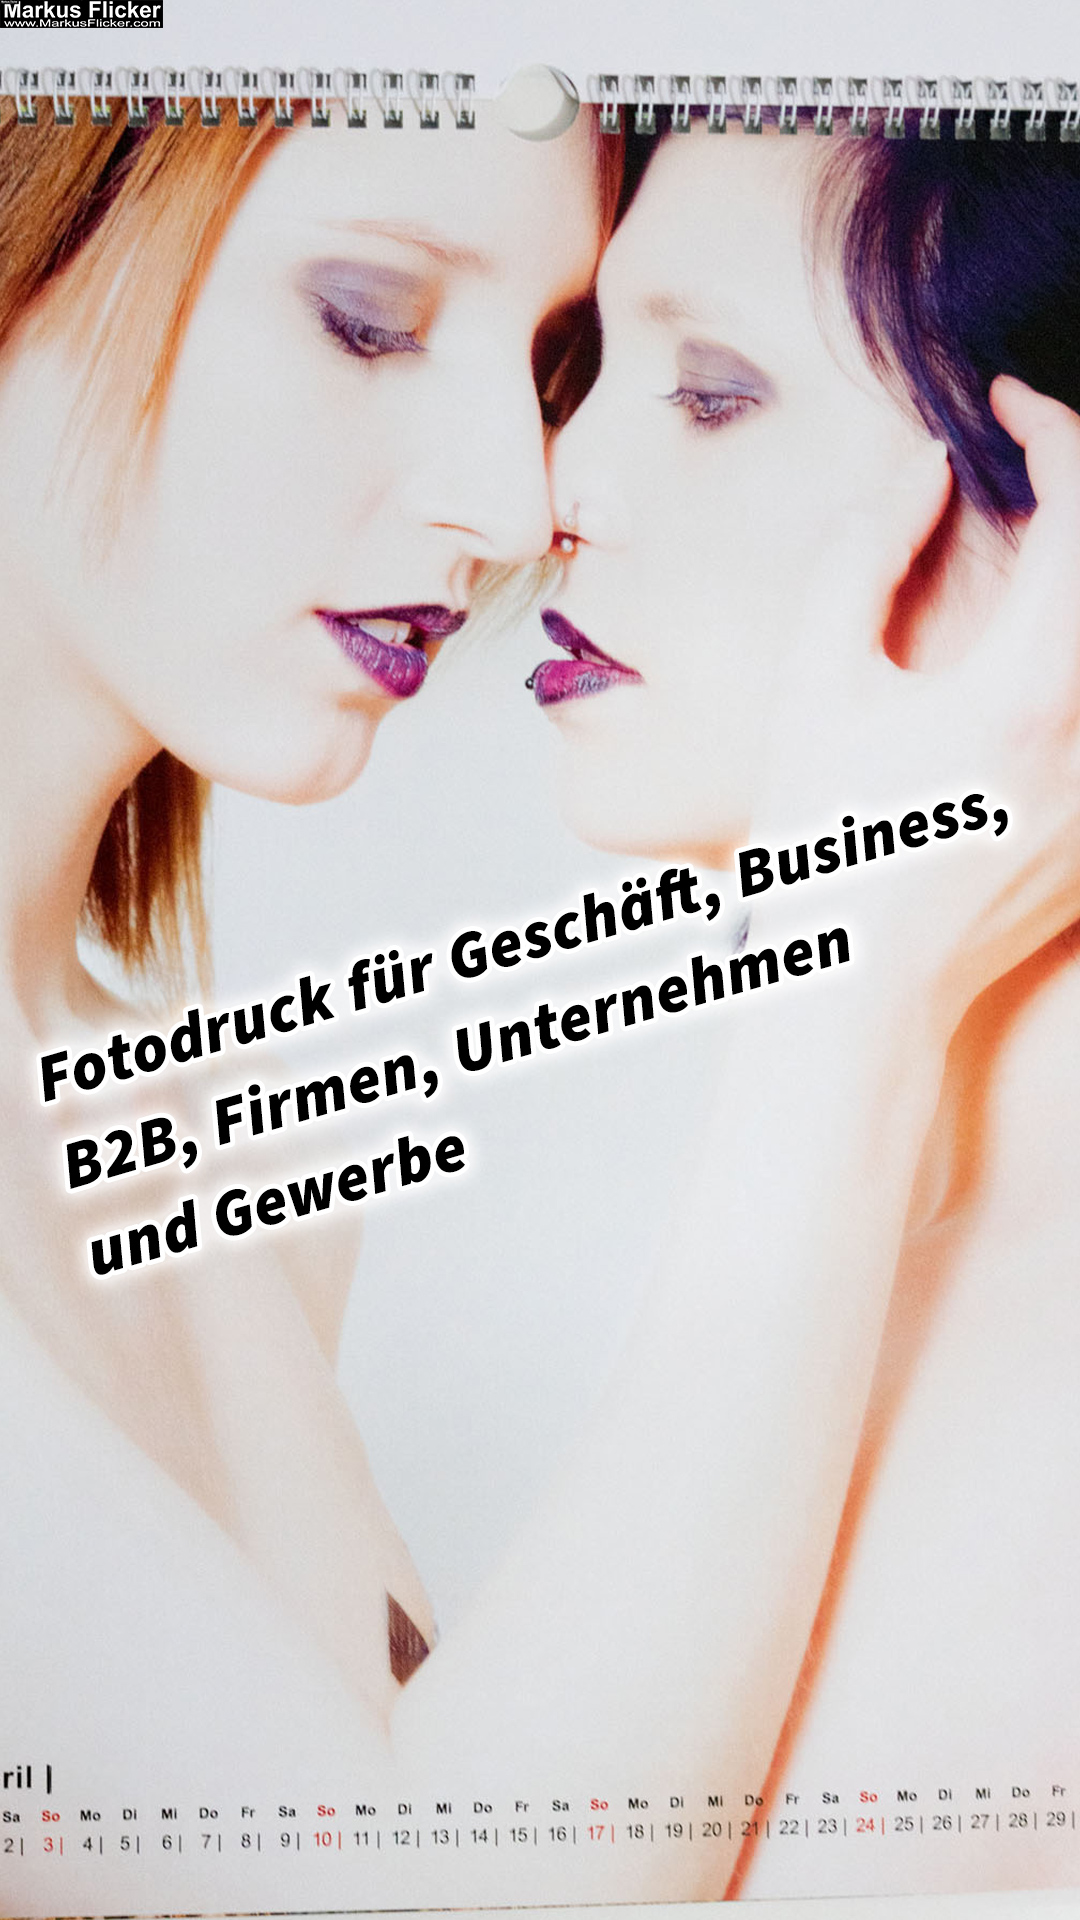 Fotodruck für Geschäft, Business, B2B, Firmen, Unternehmen und Gewerbe in Graz Steiermark Österreich